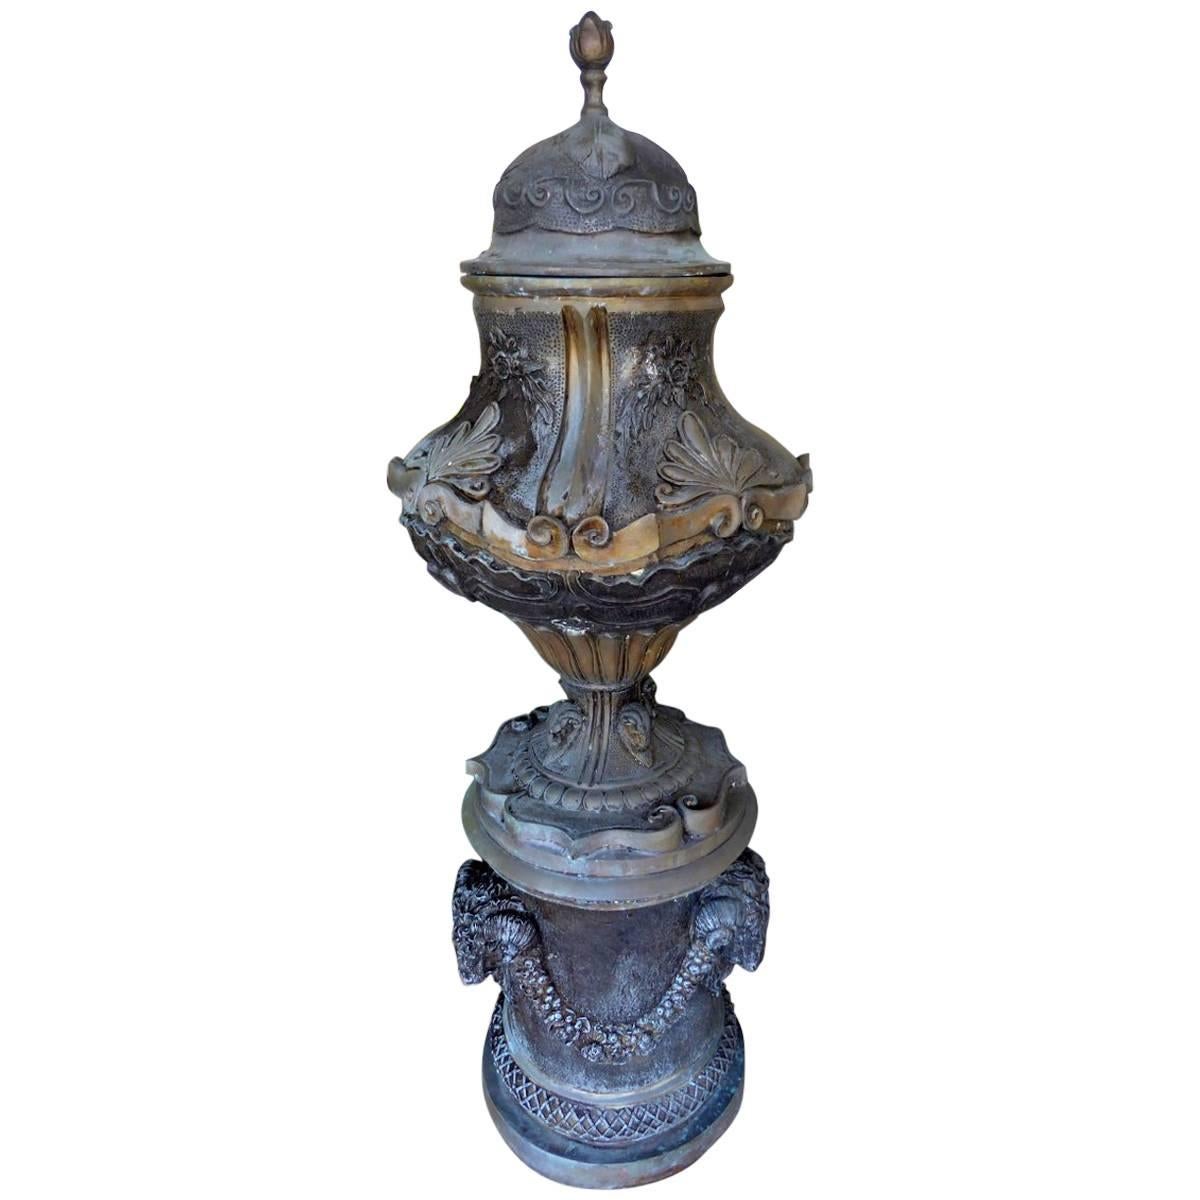 Monumental Bronze Garden Urn, Planter, or Jadiniere For Sale